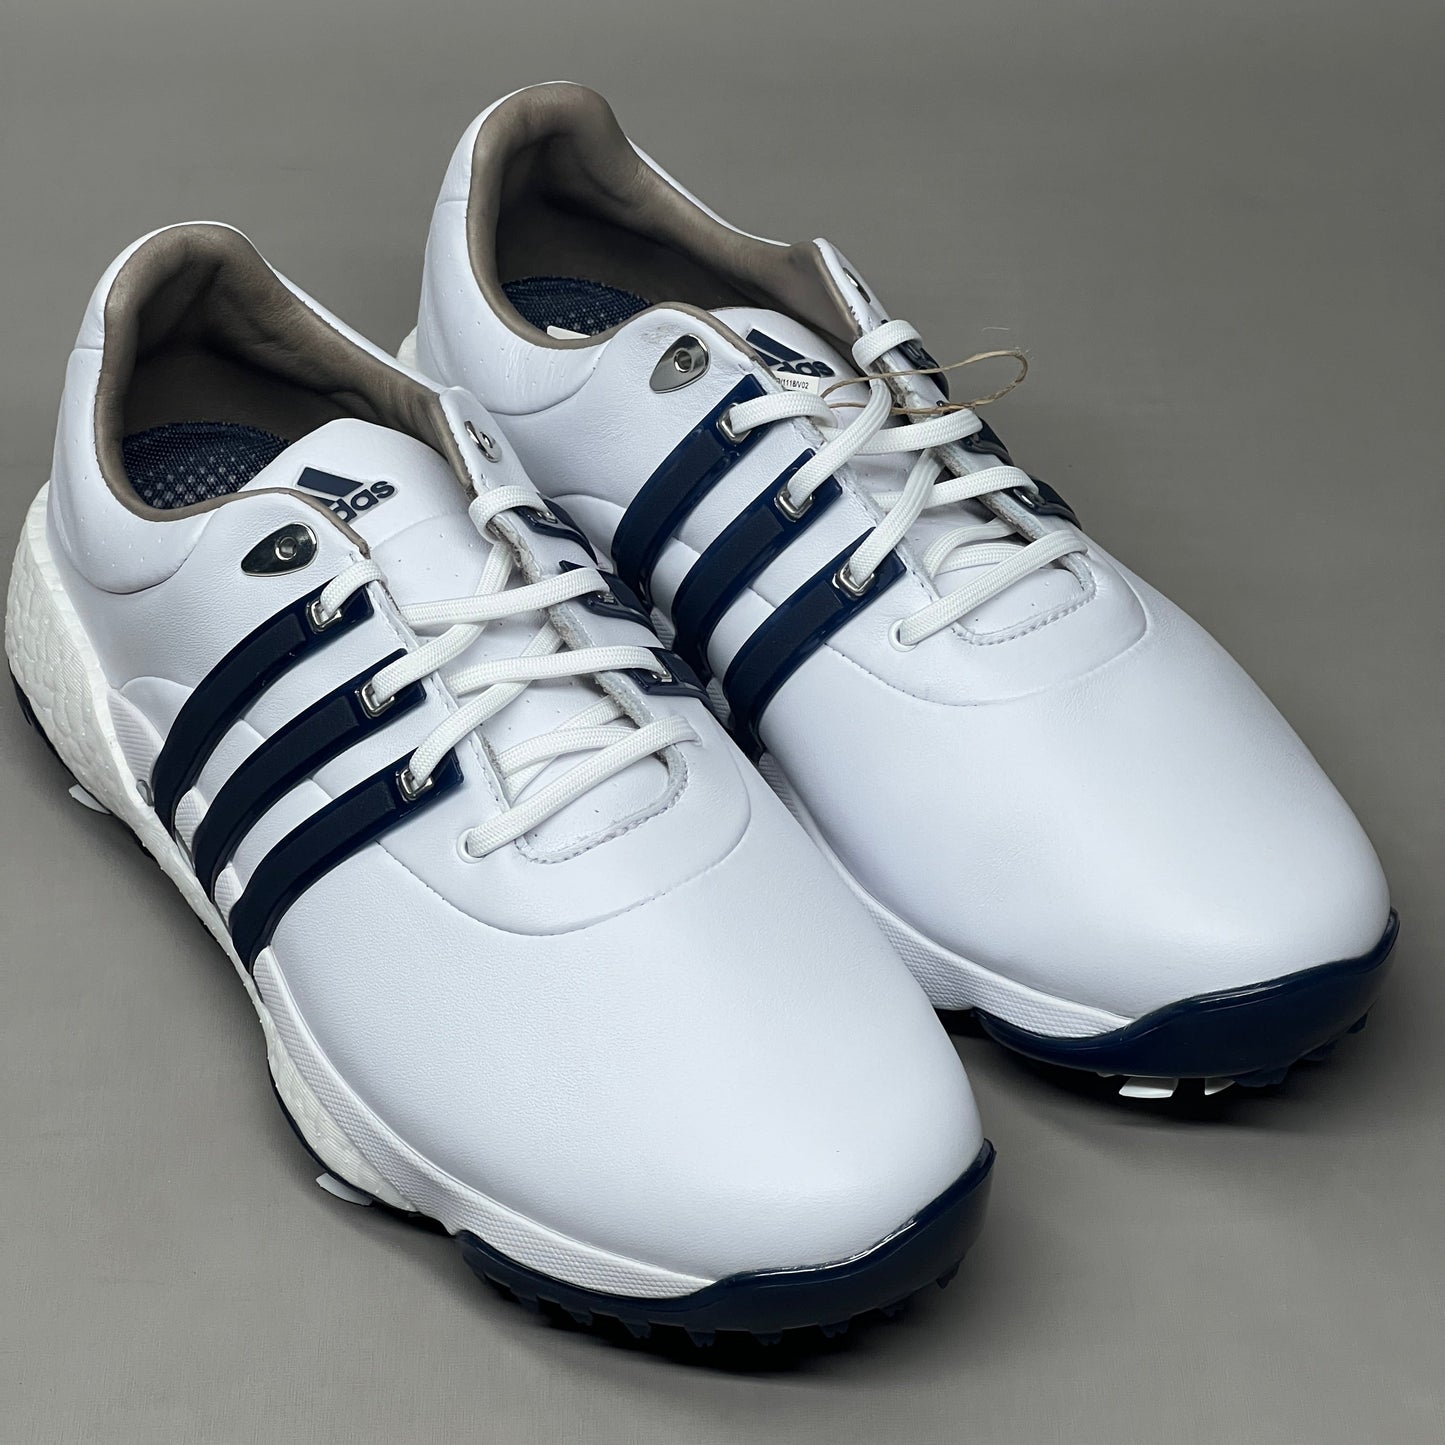 ADIDAS Golf Shoes TOUR360 22 Leather Men's Sz 10 White / Navy / Silver GV7247 (New)